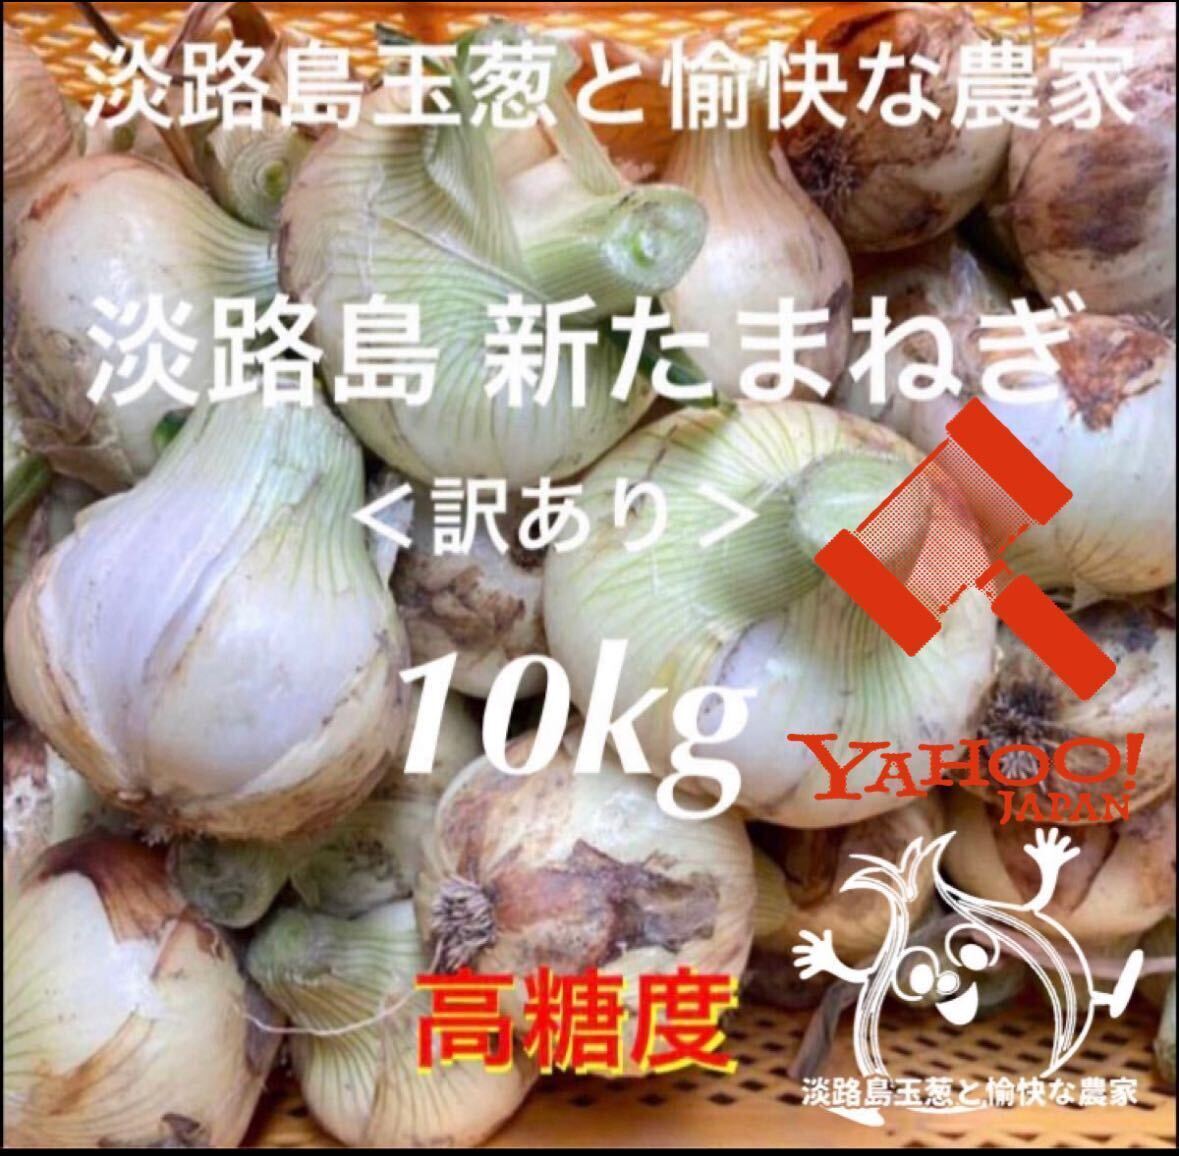 < есть перевод > Awaji Island производство новый шар лук порей 10kg высота сахар раз новый лук новый лук репчатый новый tama лук-батун 